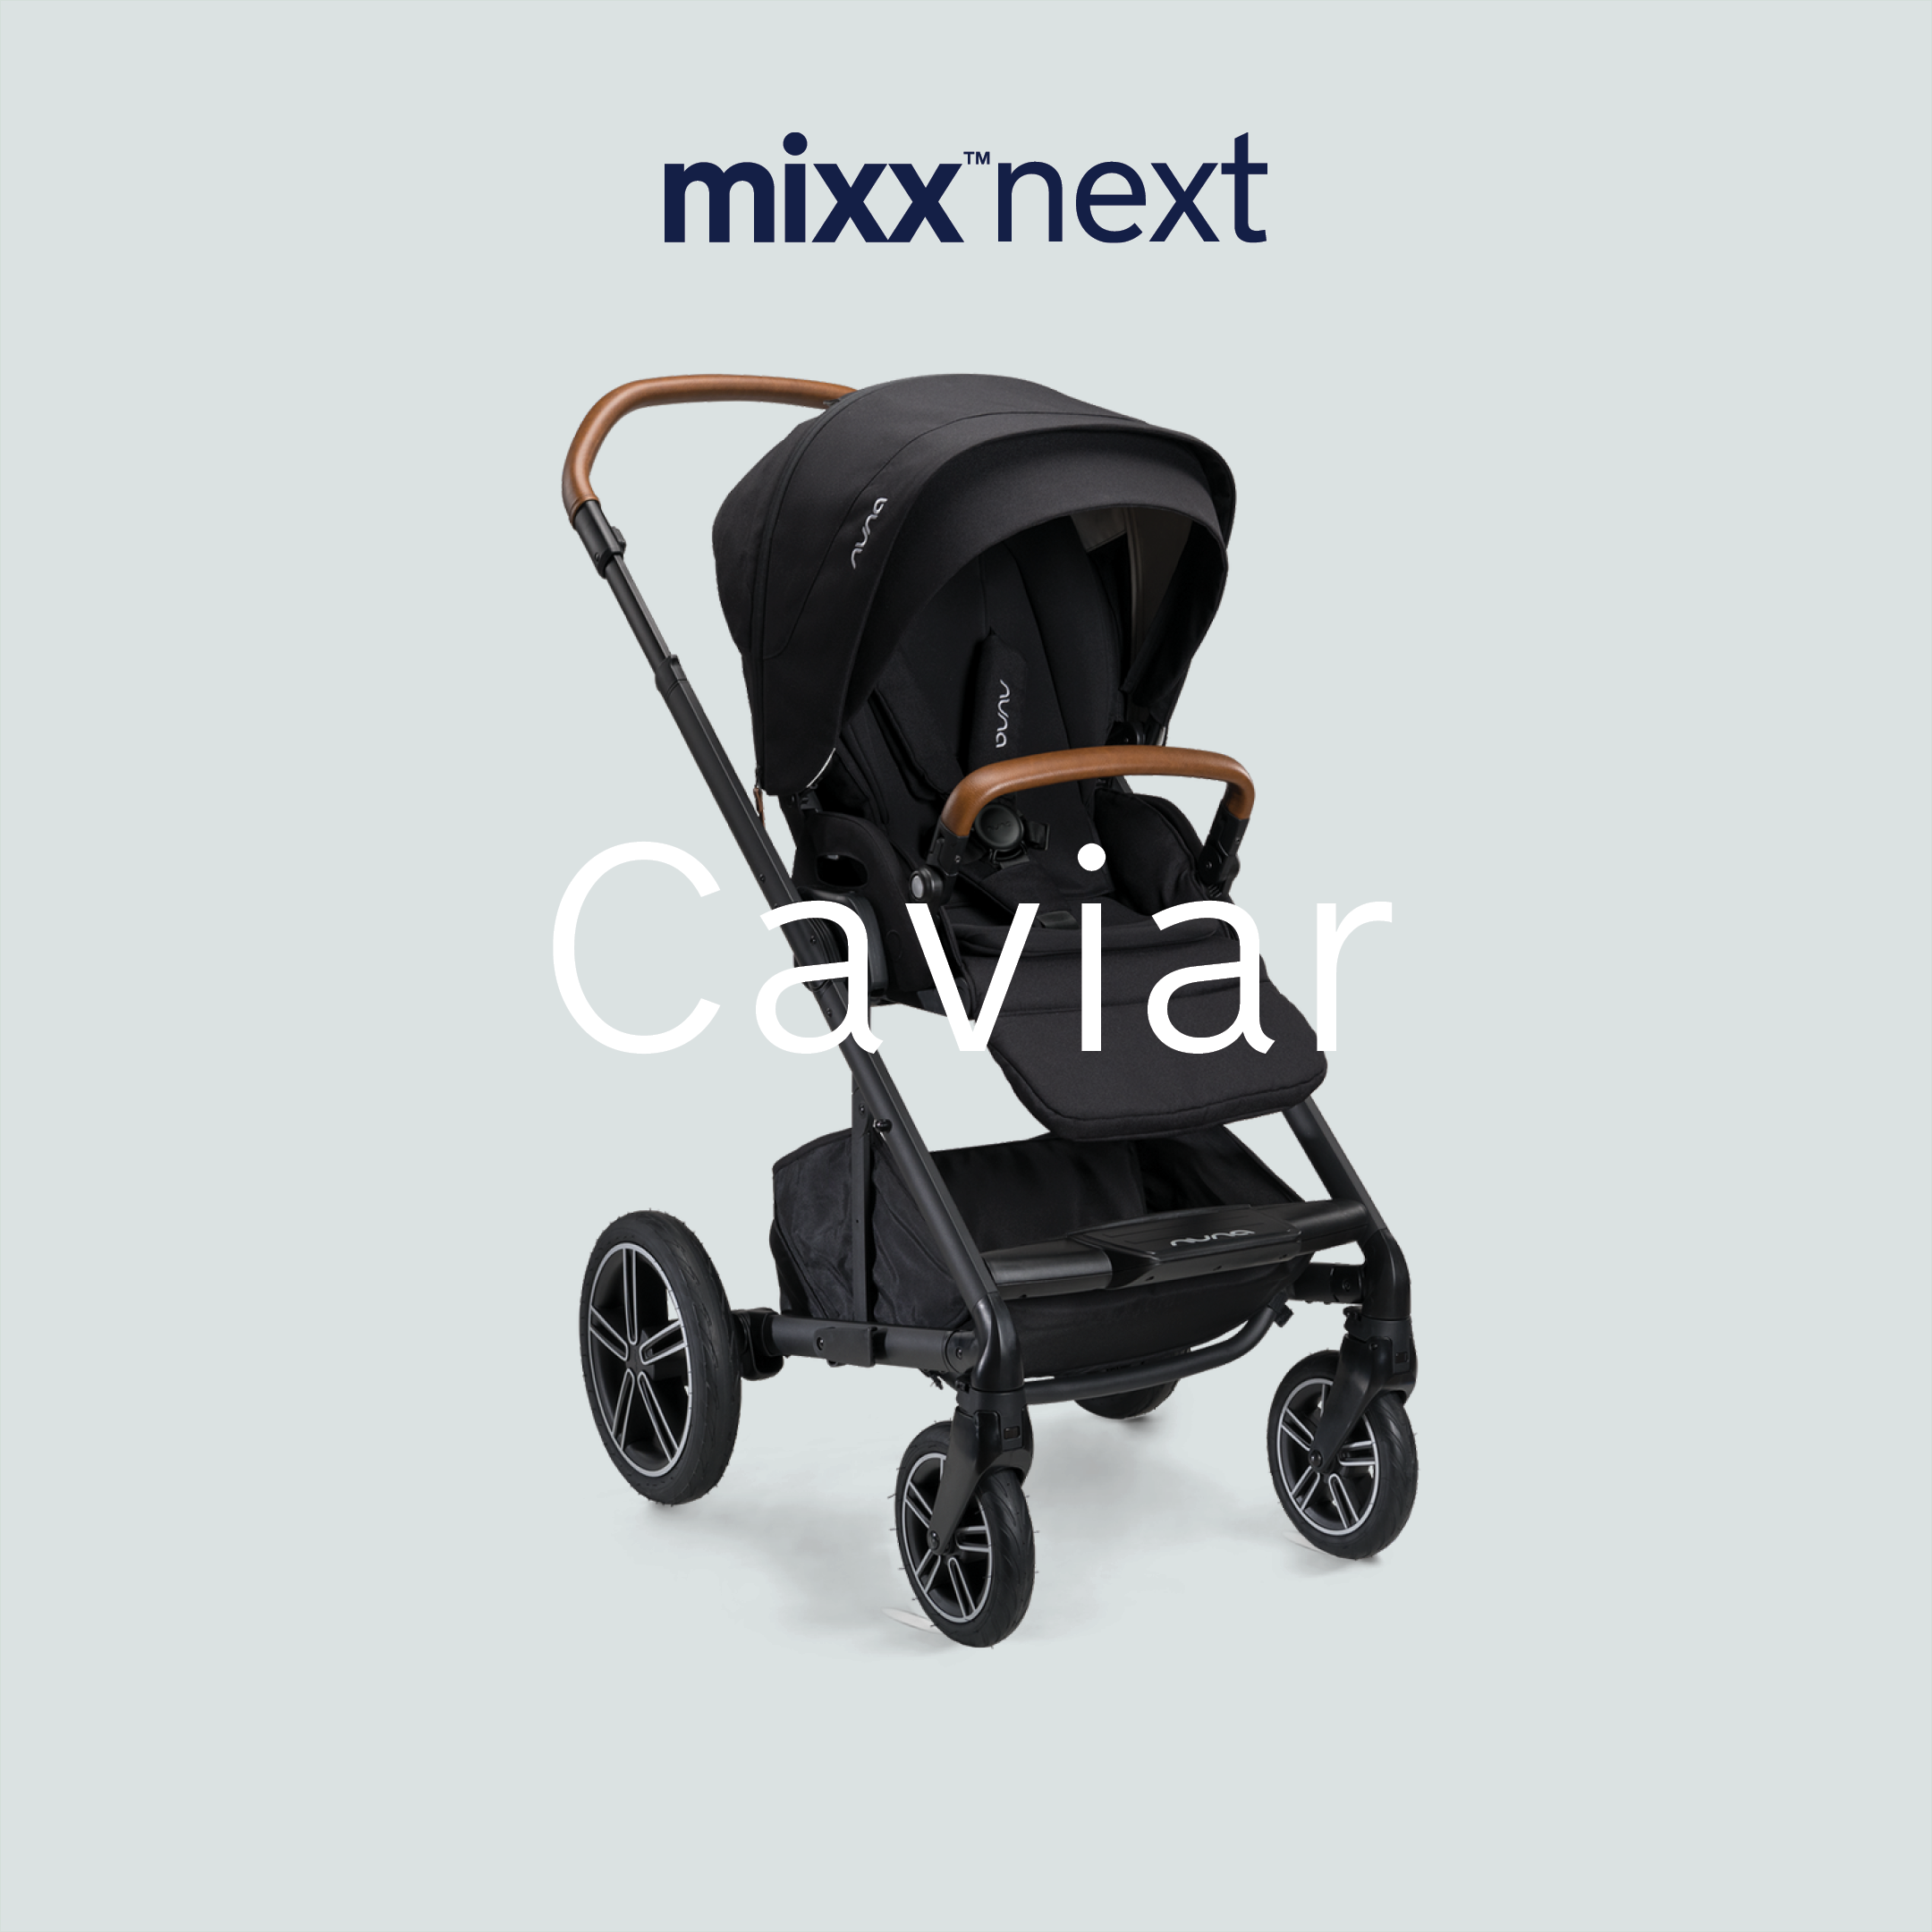 Nuna Mixx Next Travel System "Caviar"